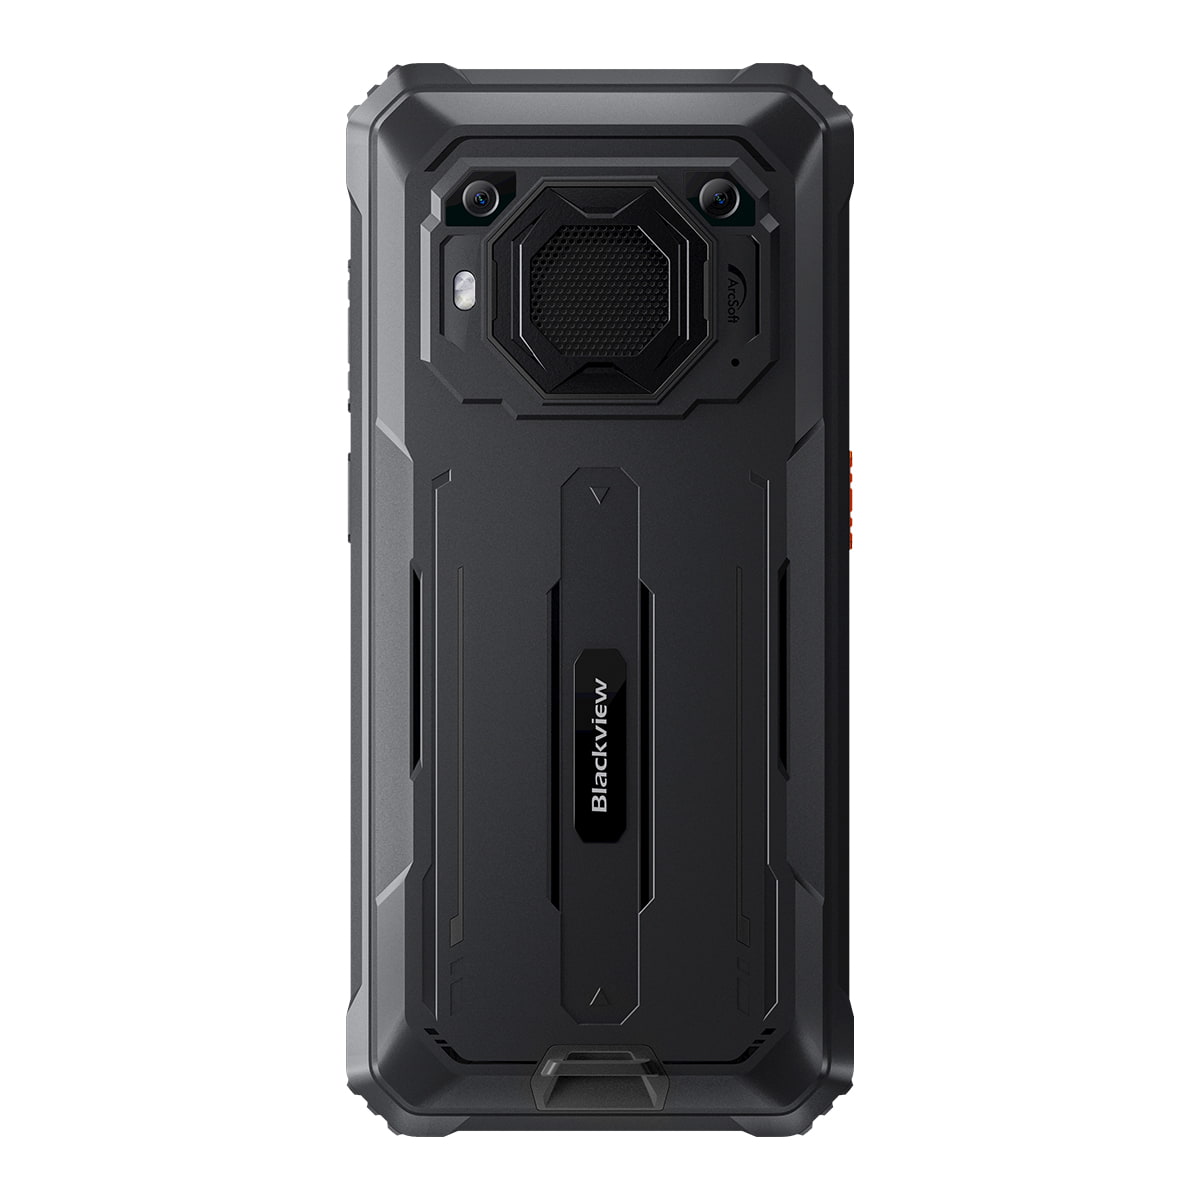 Blackview BV6200 - Smartphone antichoc - Nouveauté 2023 - Écran 6.5'', ROM 64Go RAM 4Go, Android 13, Enorme batterie de 13 000 mAh,Photo 13 Mpx